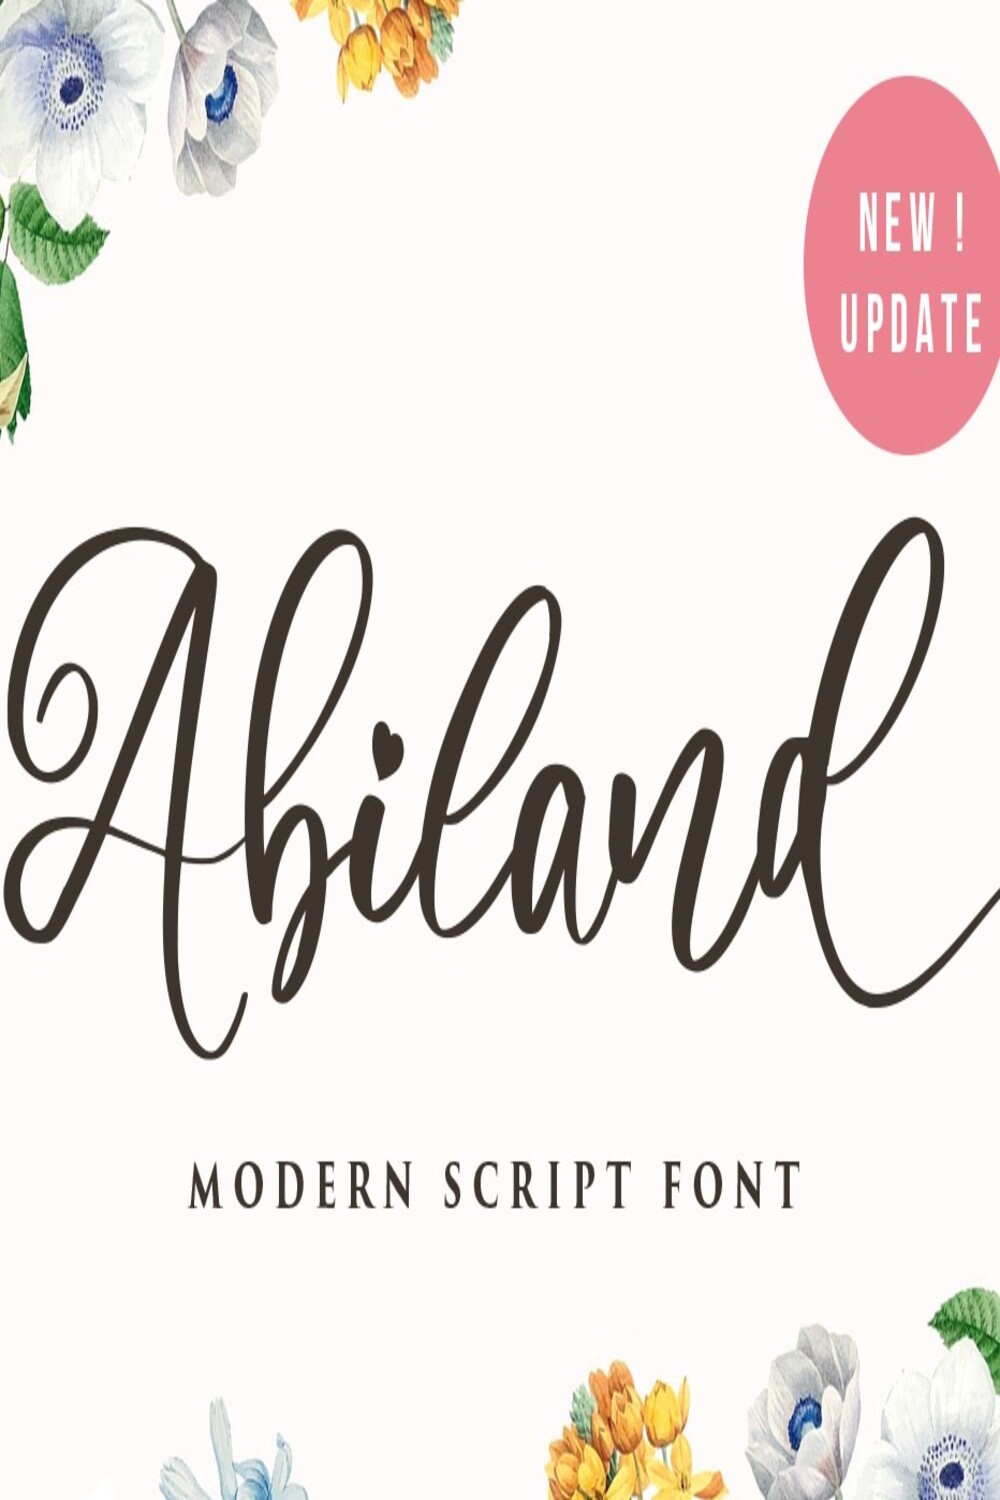 Abiland Script Font pinterest image.